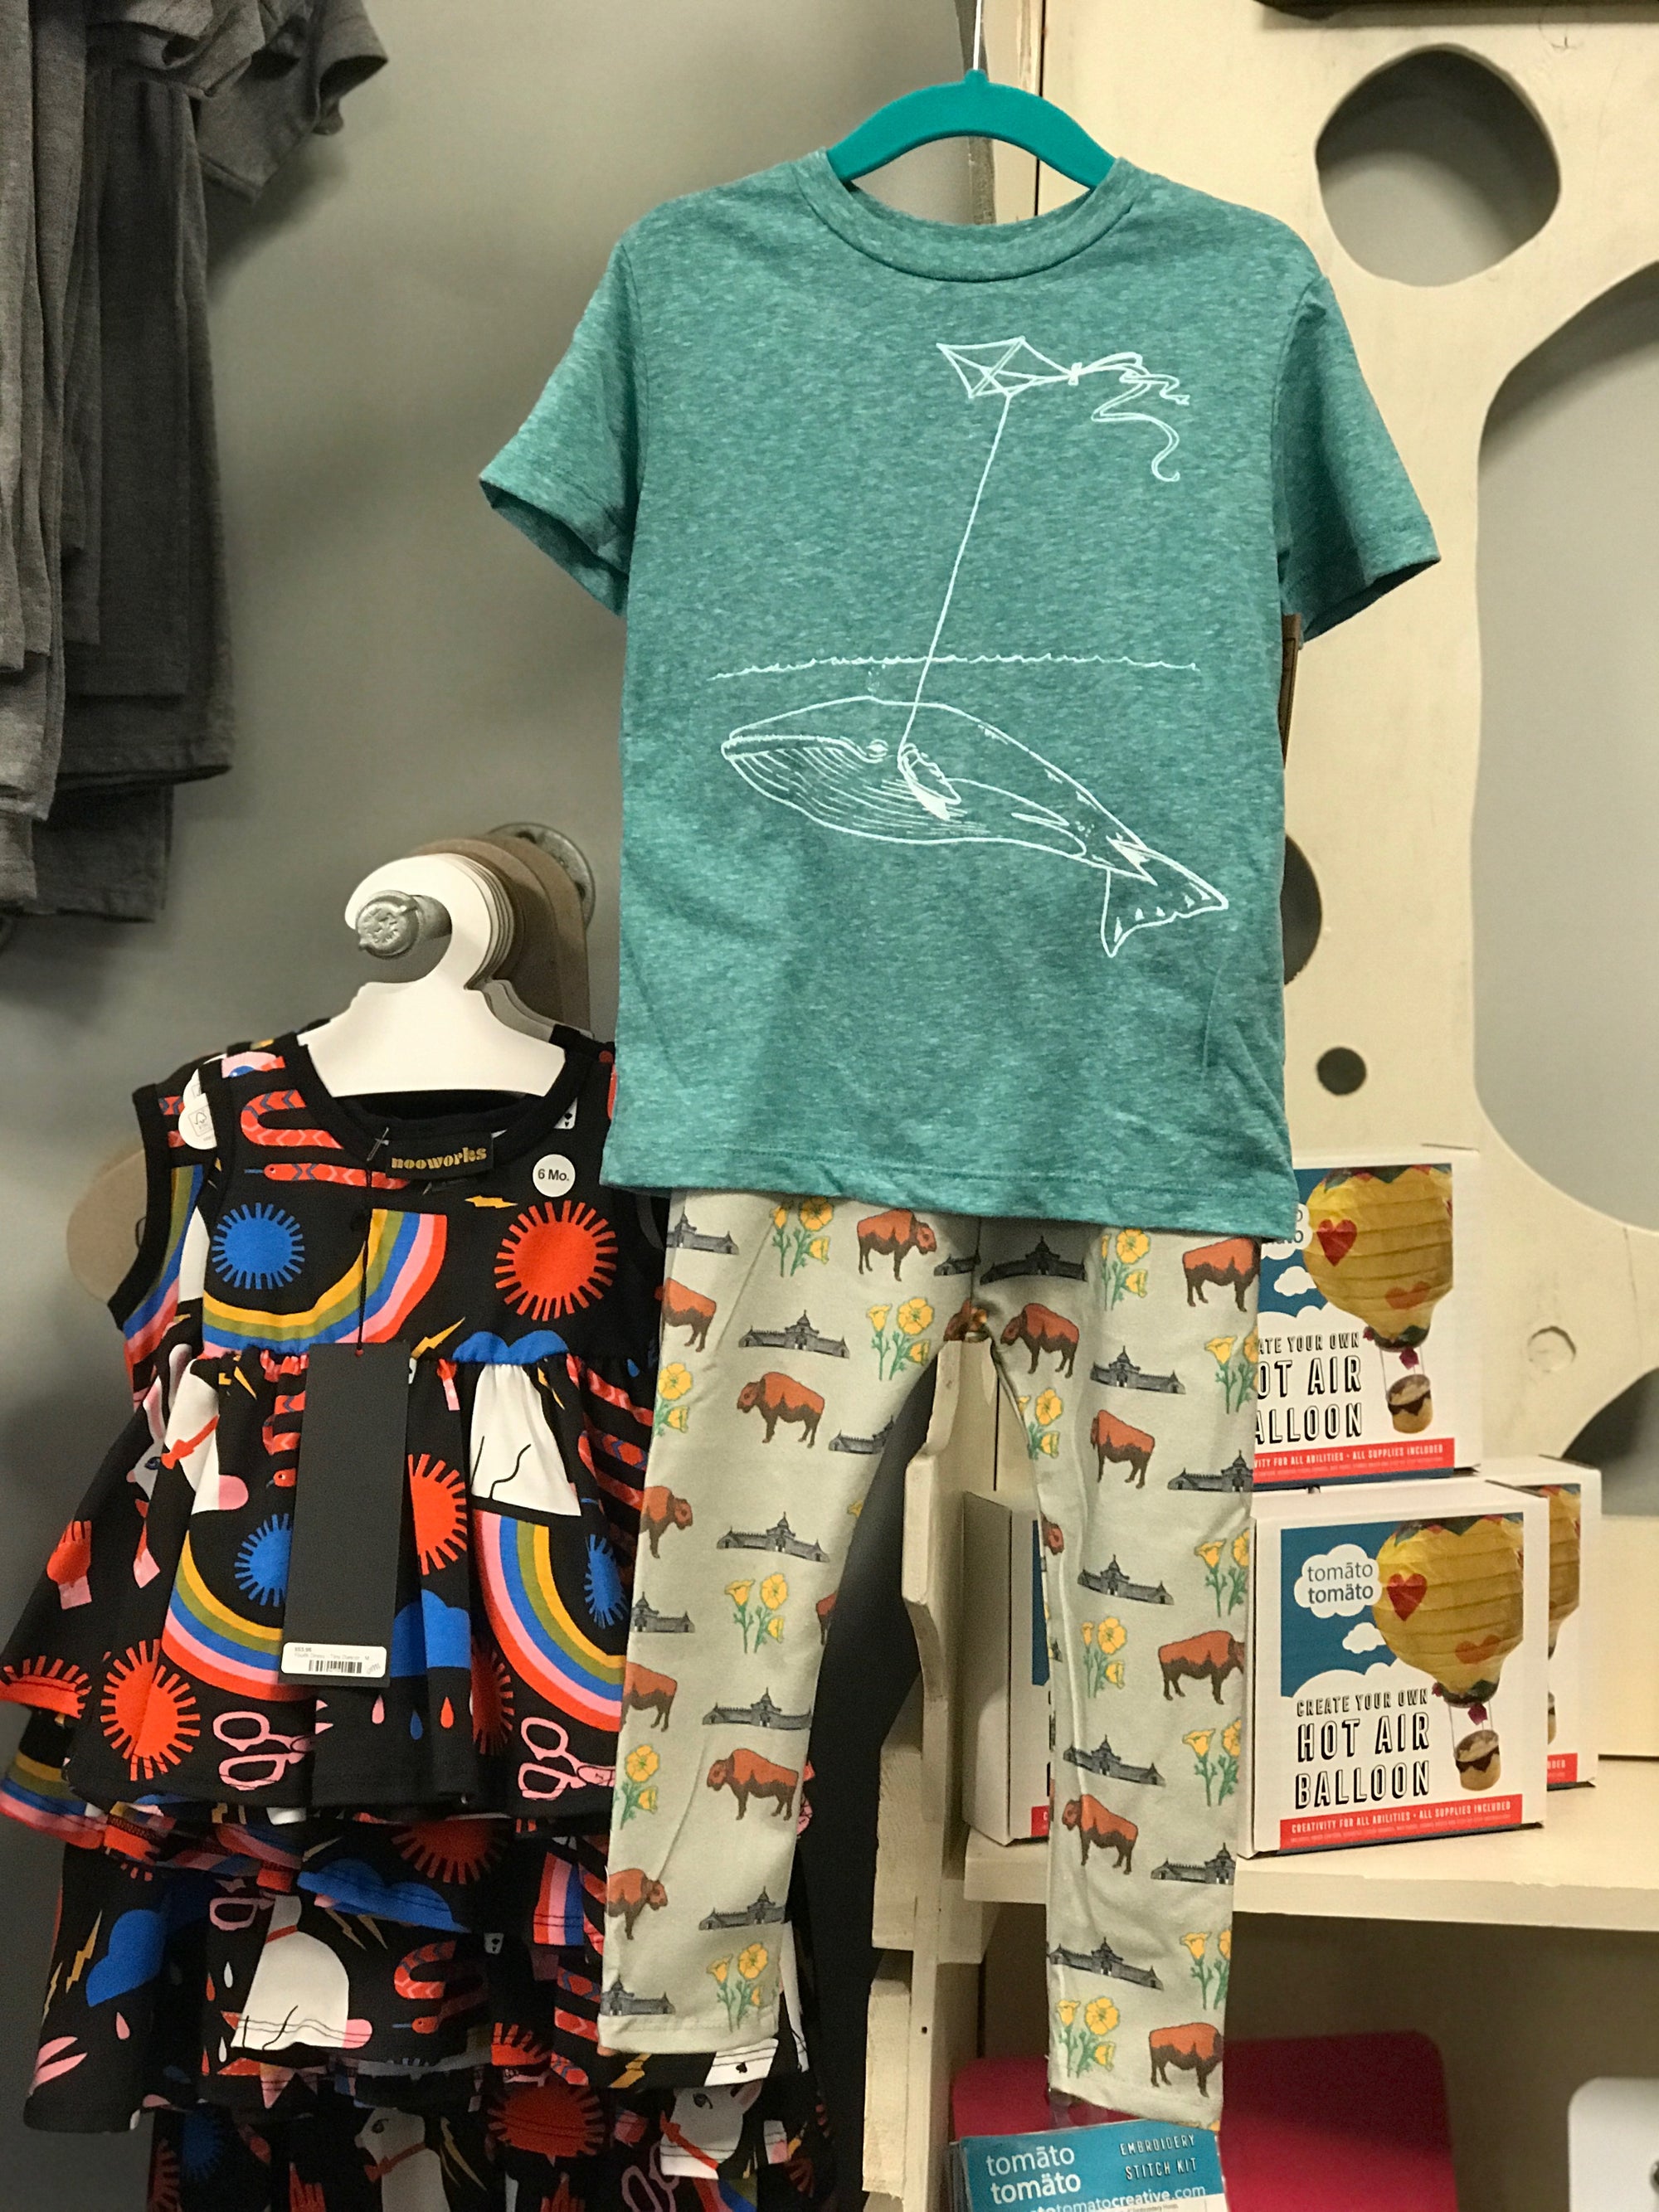 Toddler Shirt - Whale w/ Kite - Unisex Crew